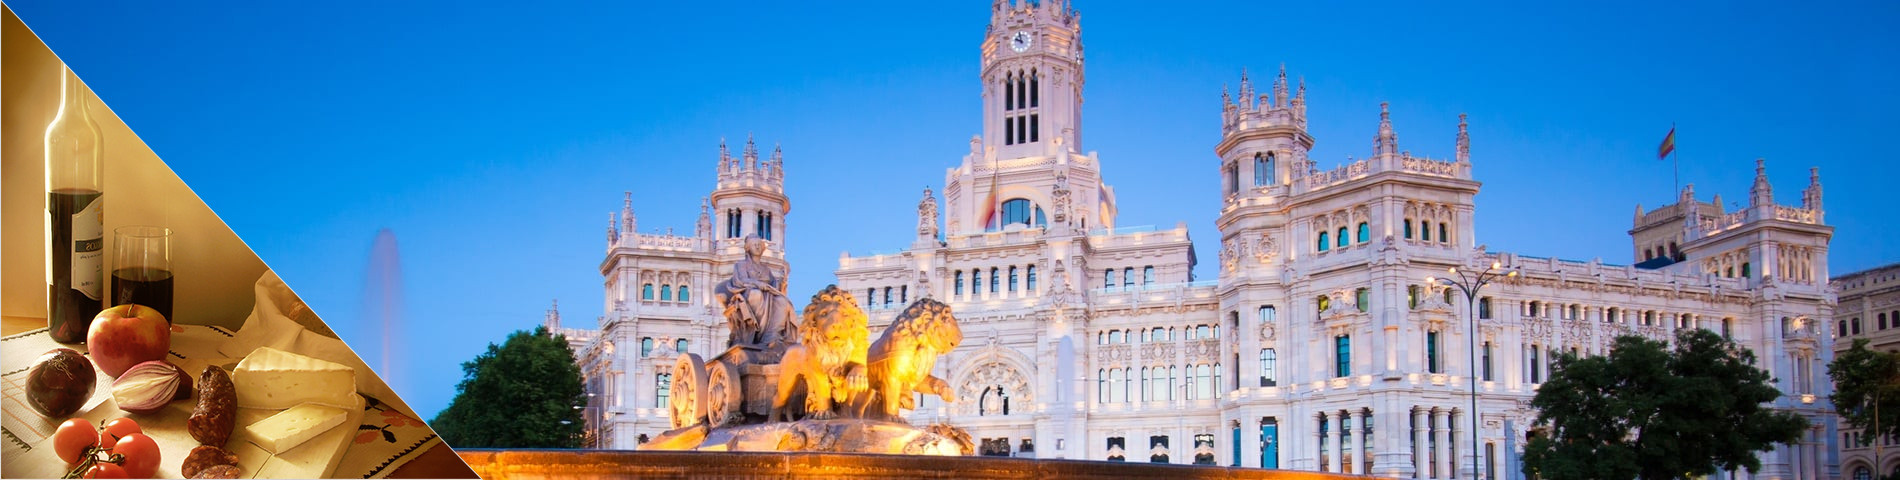 Madrid - Spaans & cultuur